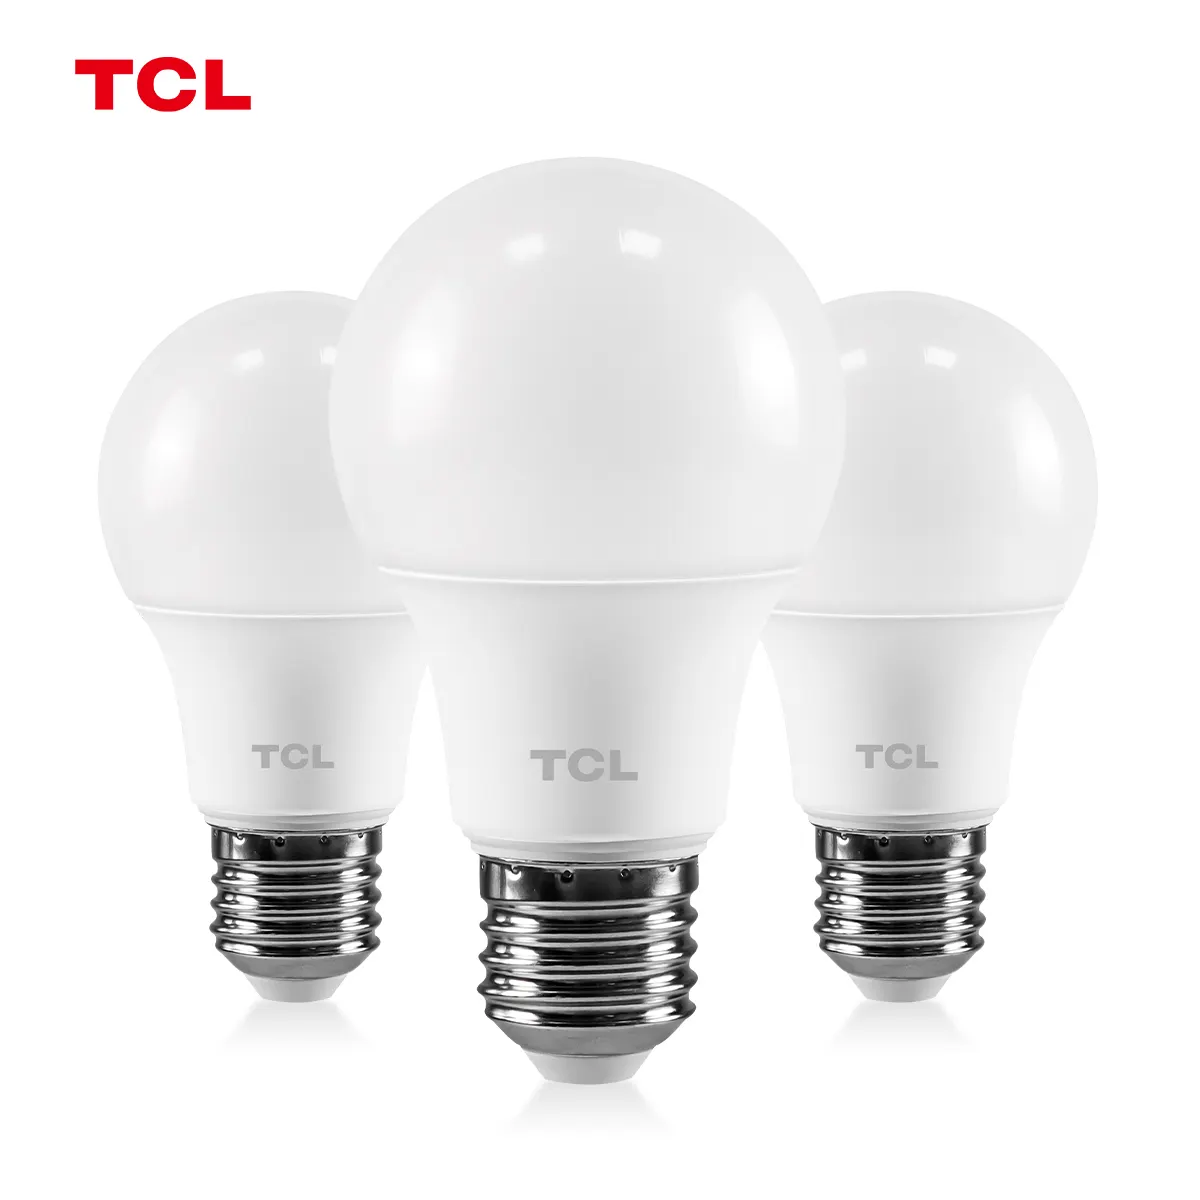 TCL lampu led ruang tamu kamar tidur, bohlam led penghemat energi, lampu rumah kualitas tinggi AC220 V E27 5W/7W/9W/12W